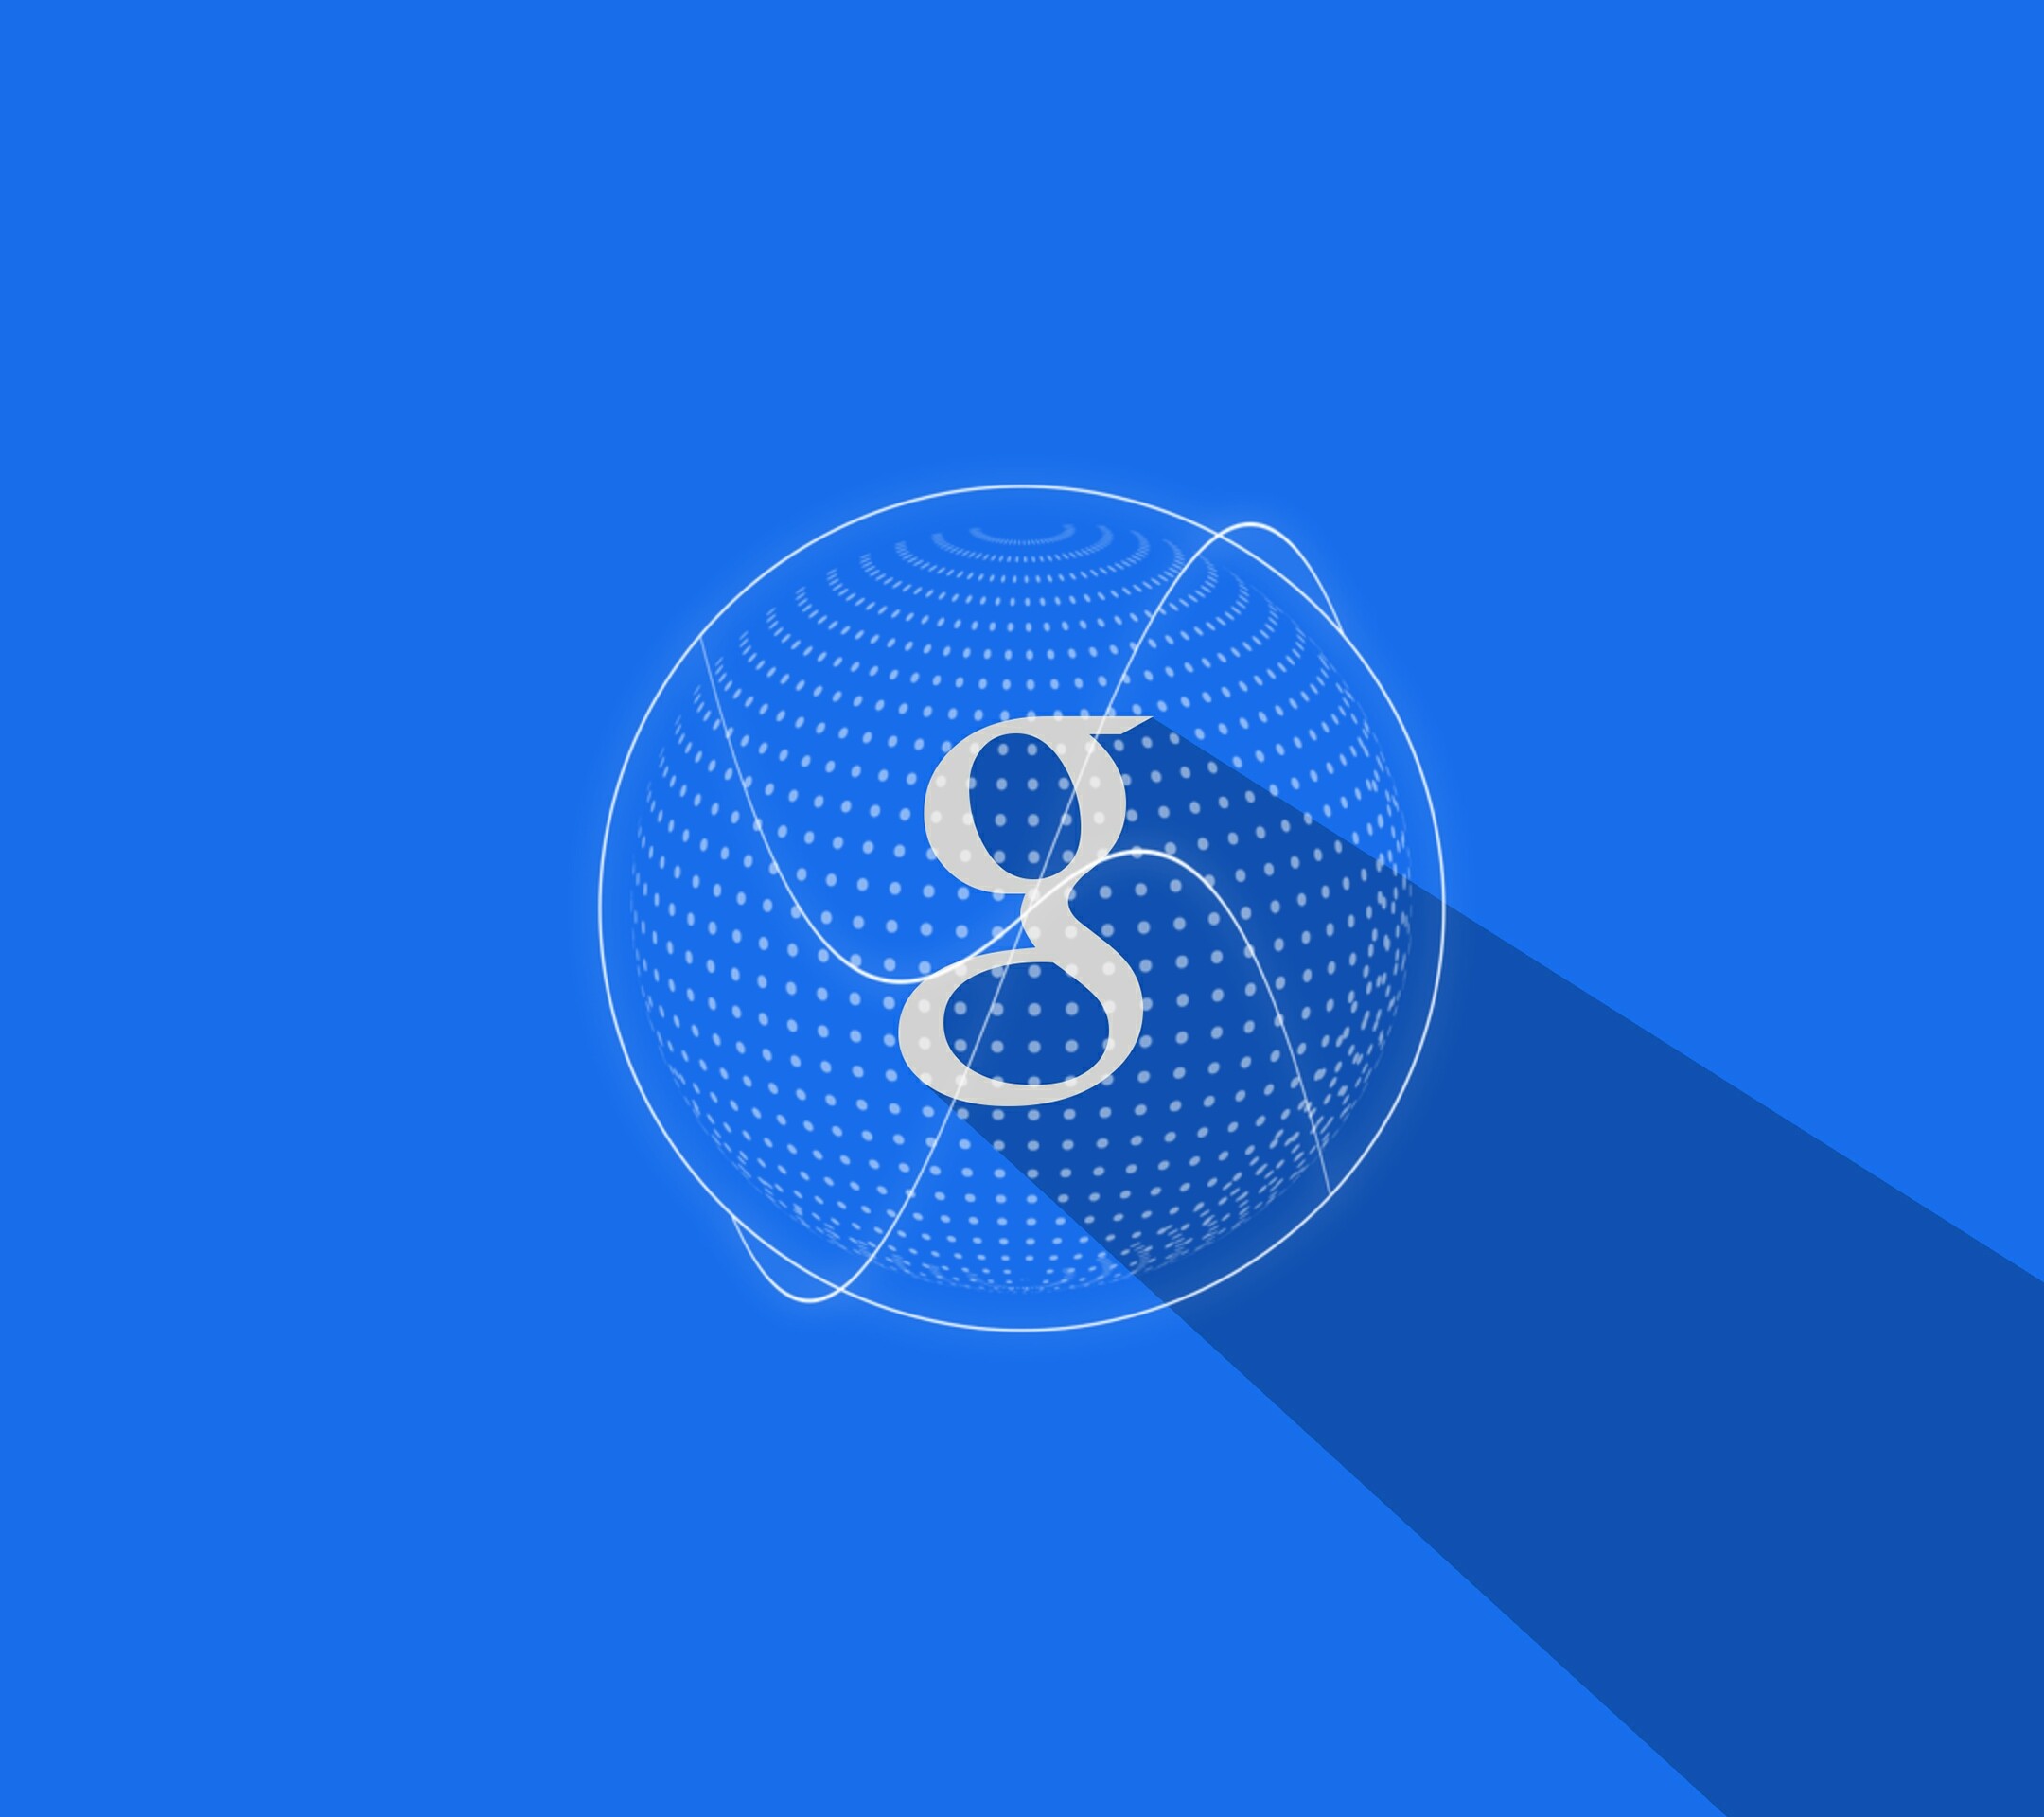 General 2160x1920 Google logo blue background blue website